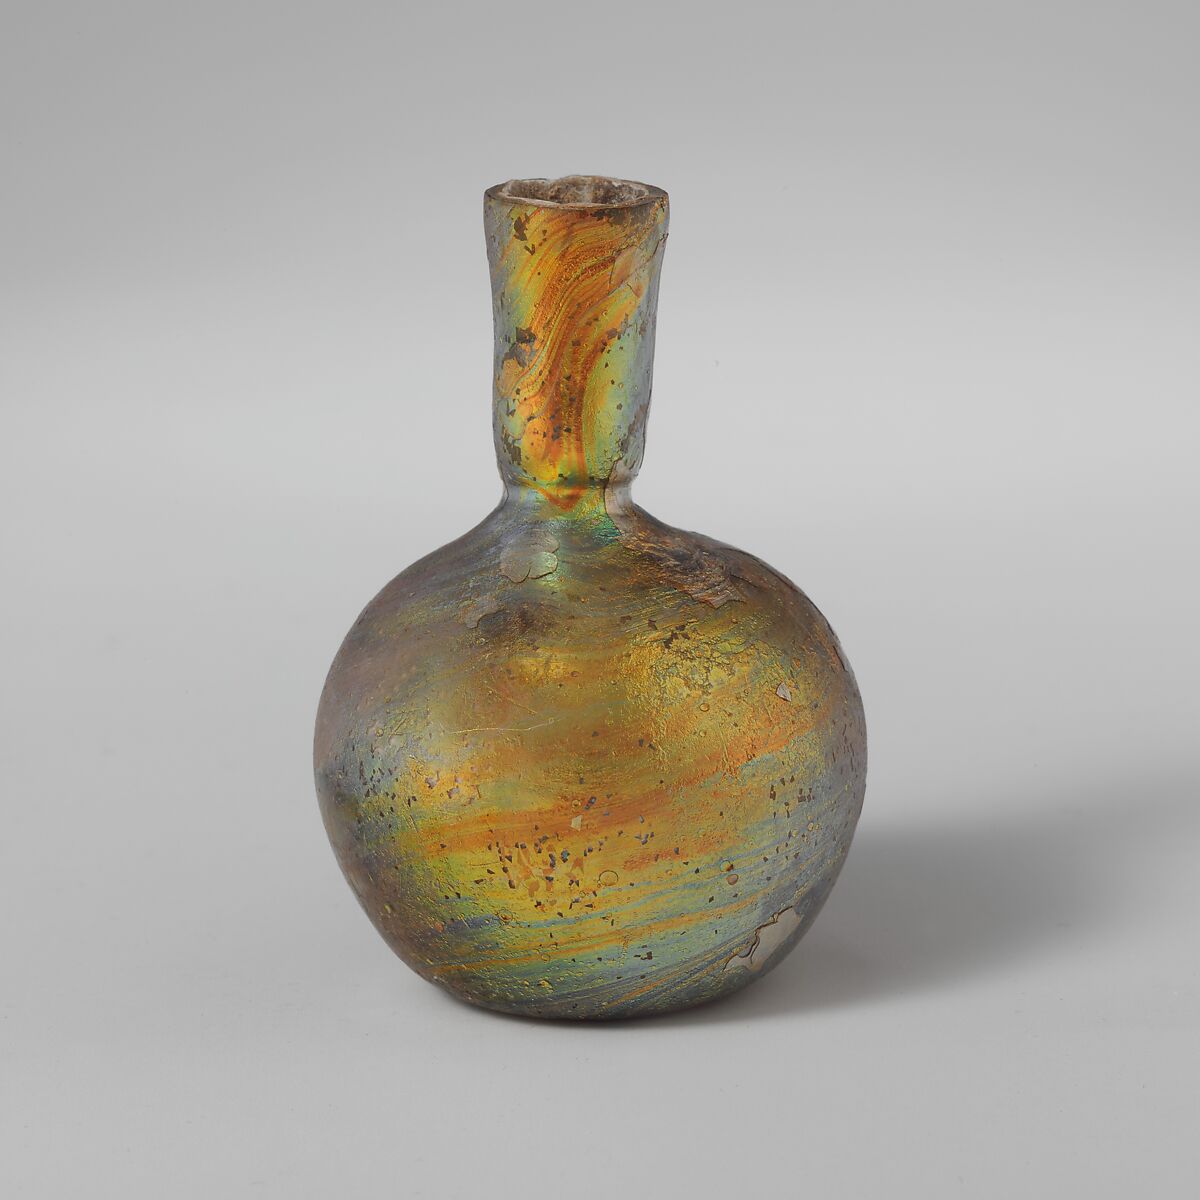 Glass miniature flask, Glass, Roman 